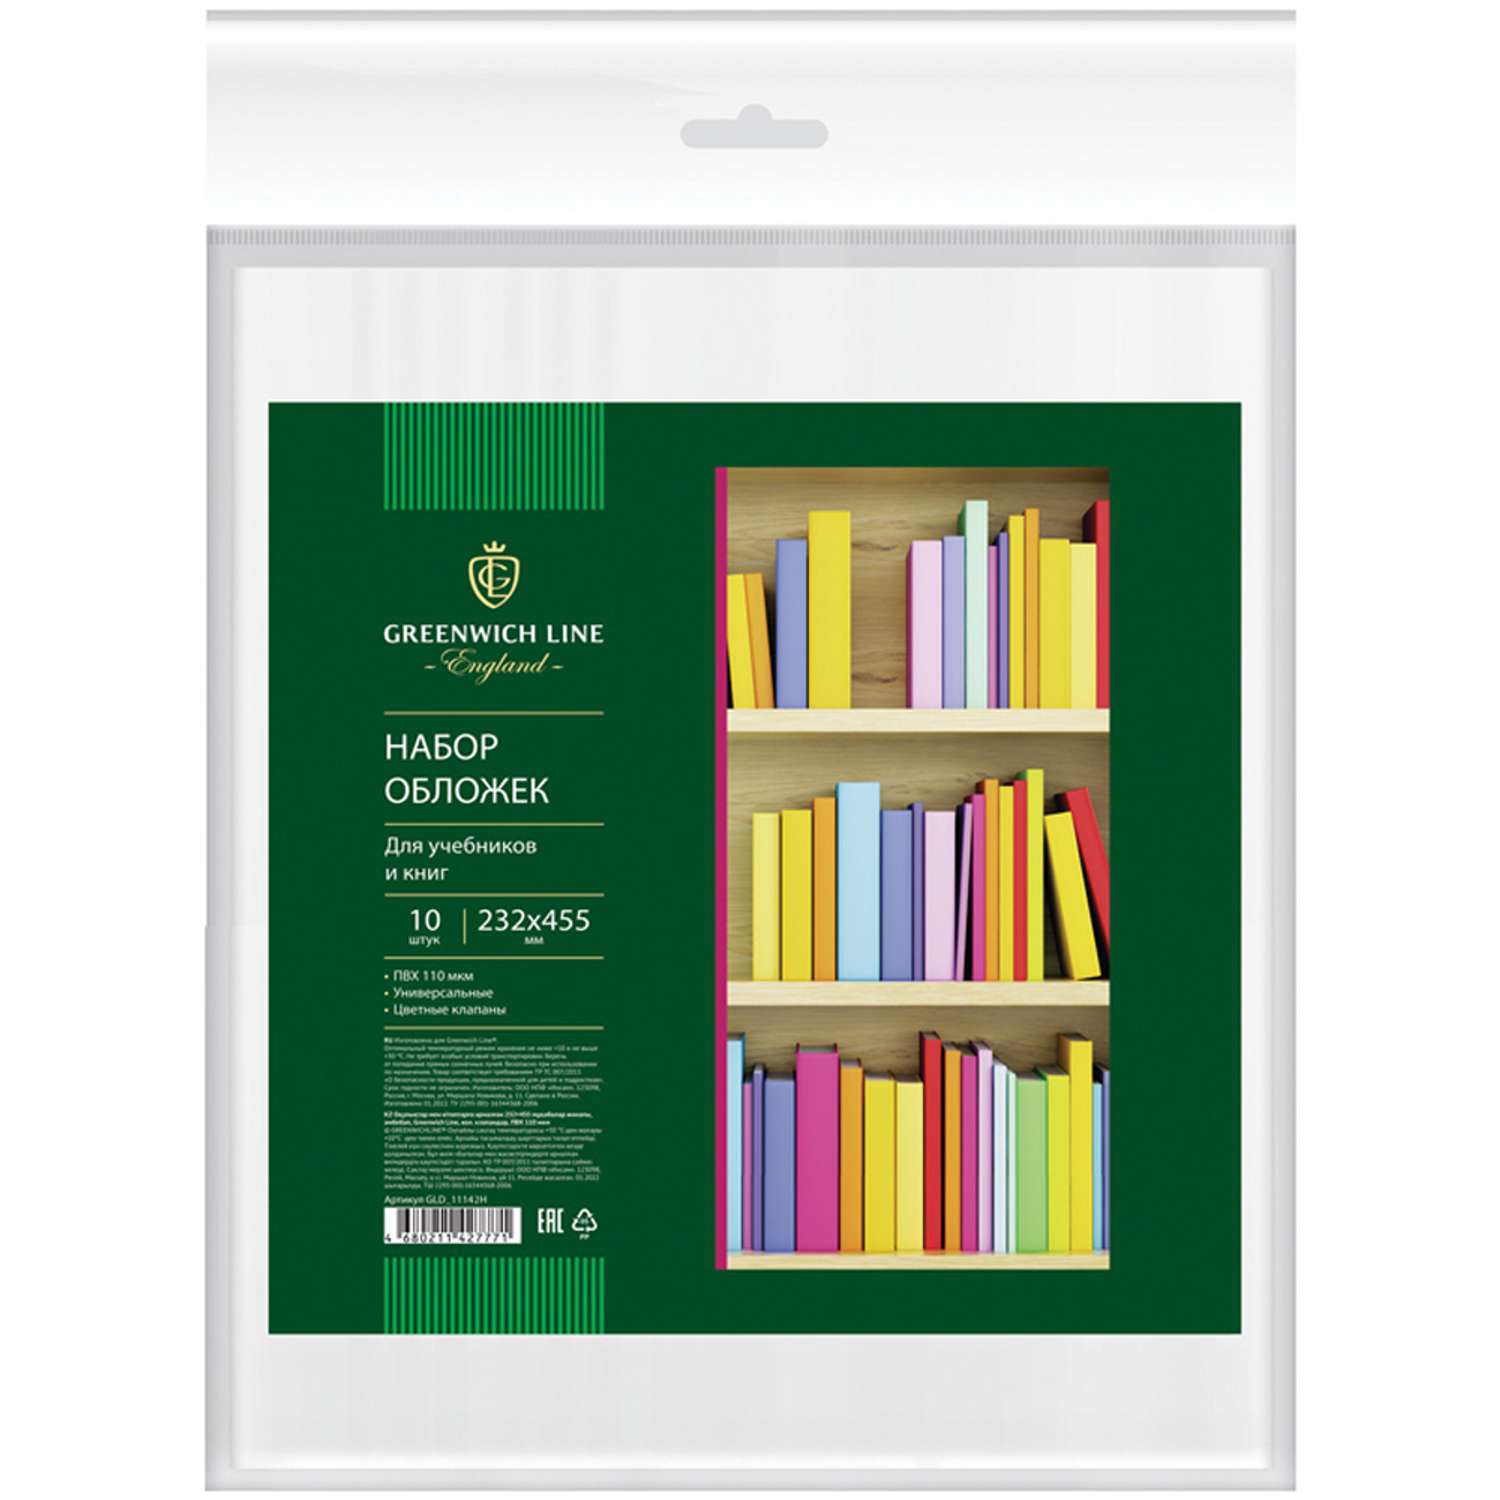 Обложки школьные Greenwich Line 10 шт 232*455 для учебников и книг универсальные цв. клапаны ПВХ 110 мкм - фото 1